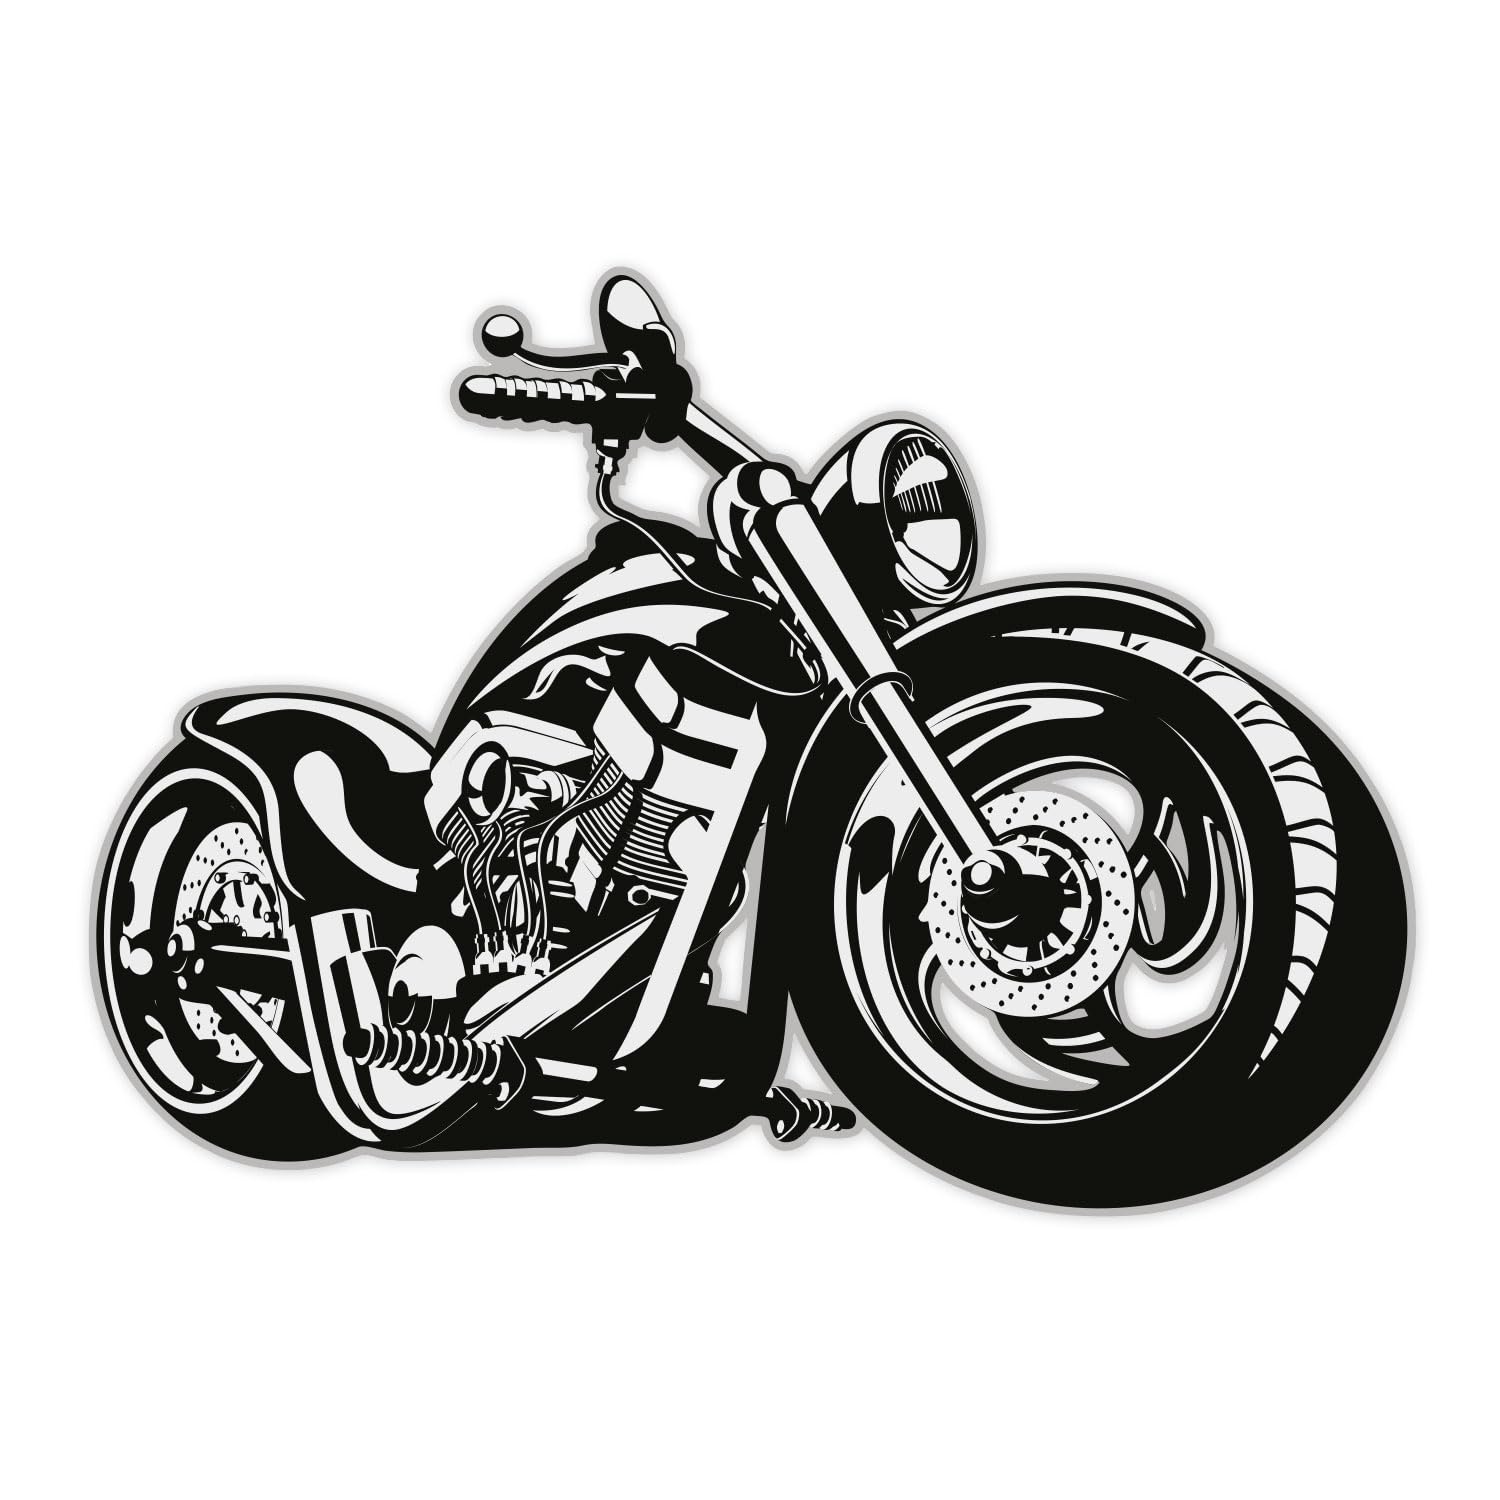 iSecur Wandtattoo Custom Bike, Art. Nr. kfz_517, Schwarz/Weiß, Harley Moped Chopper, Tattoo für die Wand, Matt laminiert, Vergilbungsfrei, Raufaser geeignet (800mm x 580mm) von iSecur